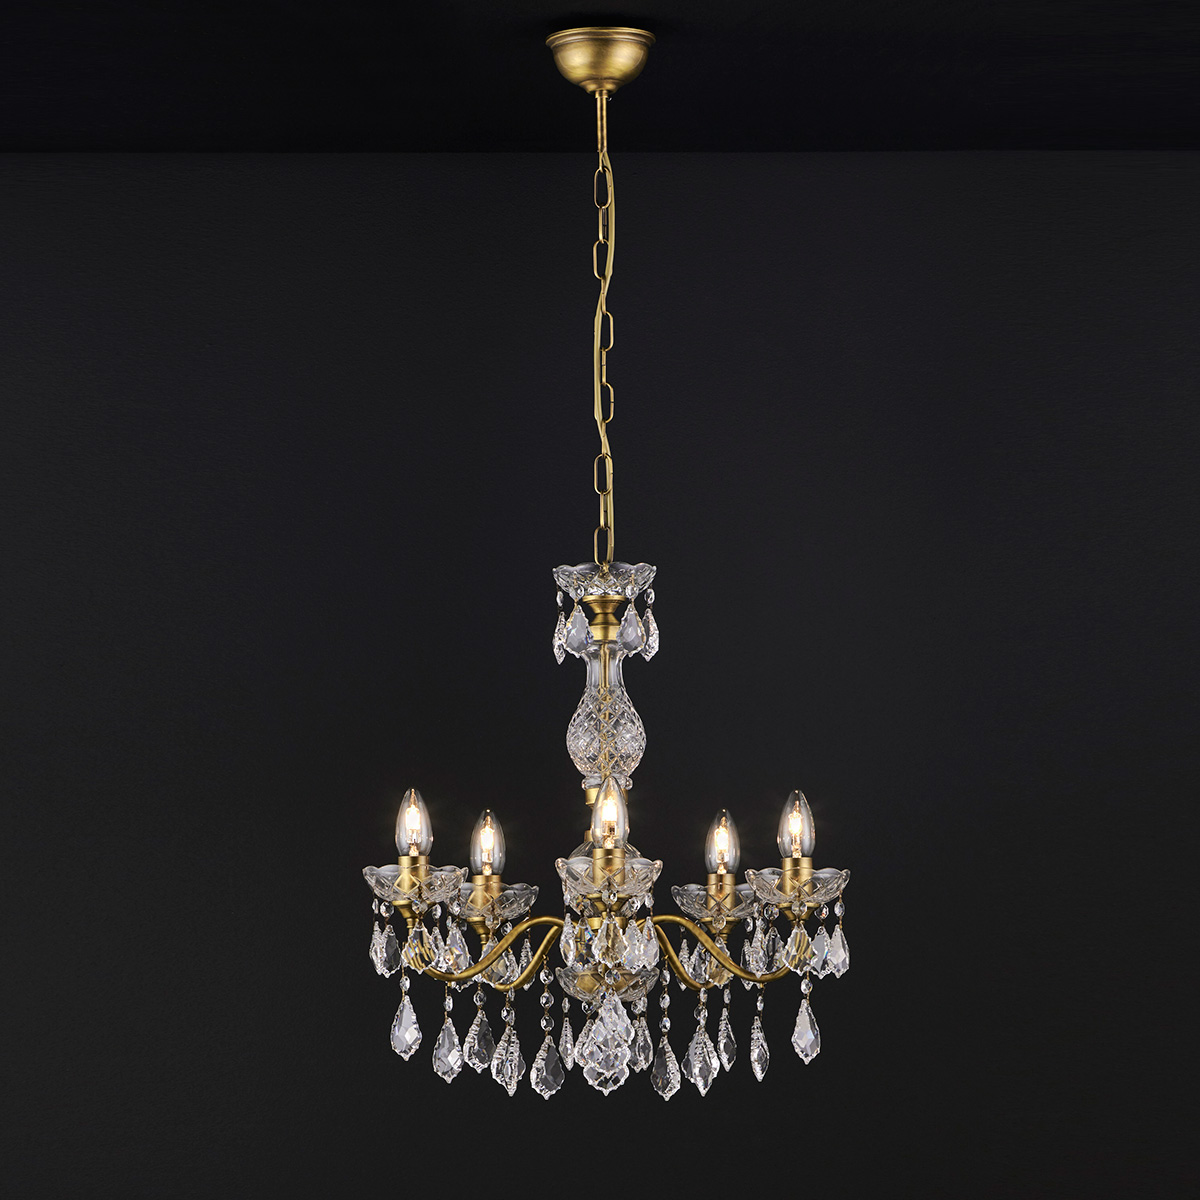 Κλασικό 5φωτο κρεμαστό φωτιστικό με κρύσταλλα ΔΙΟΝ classic 5-bulb chandelier with crystal accents